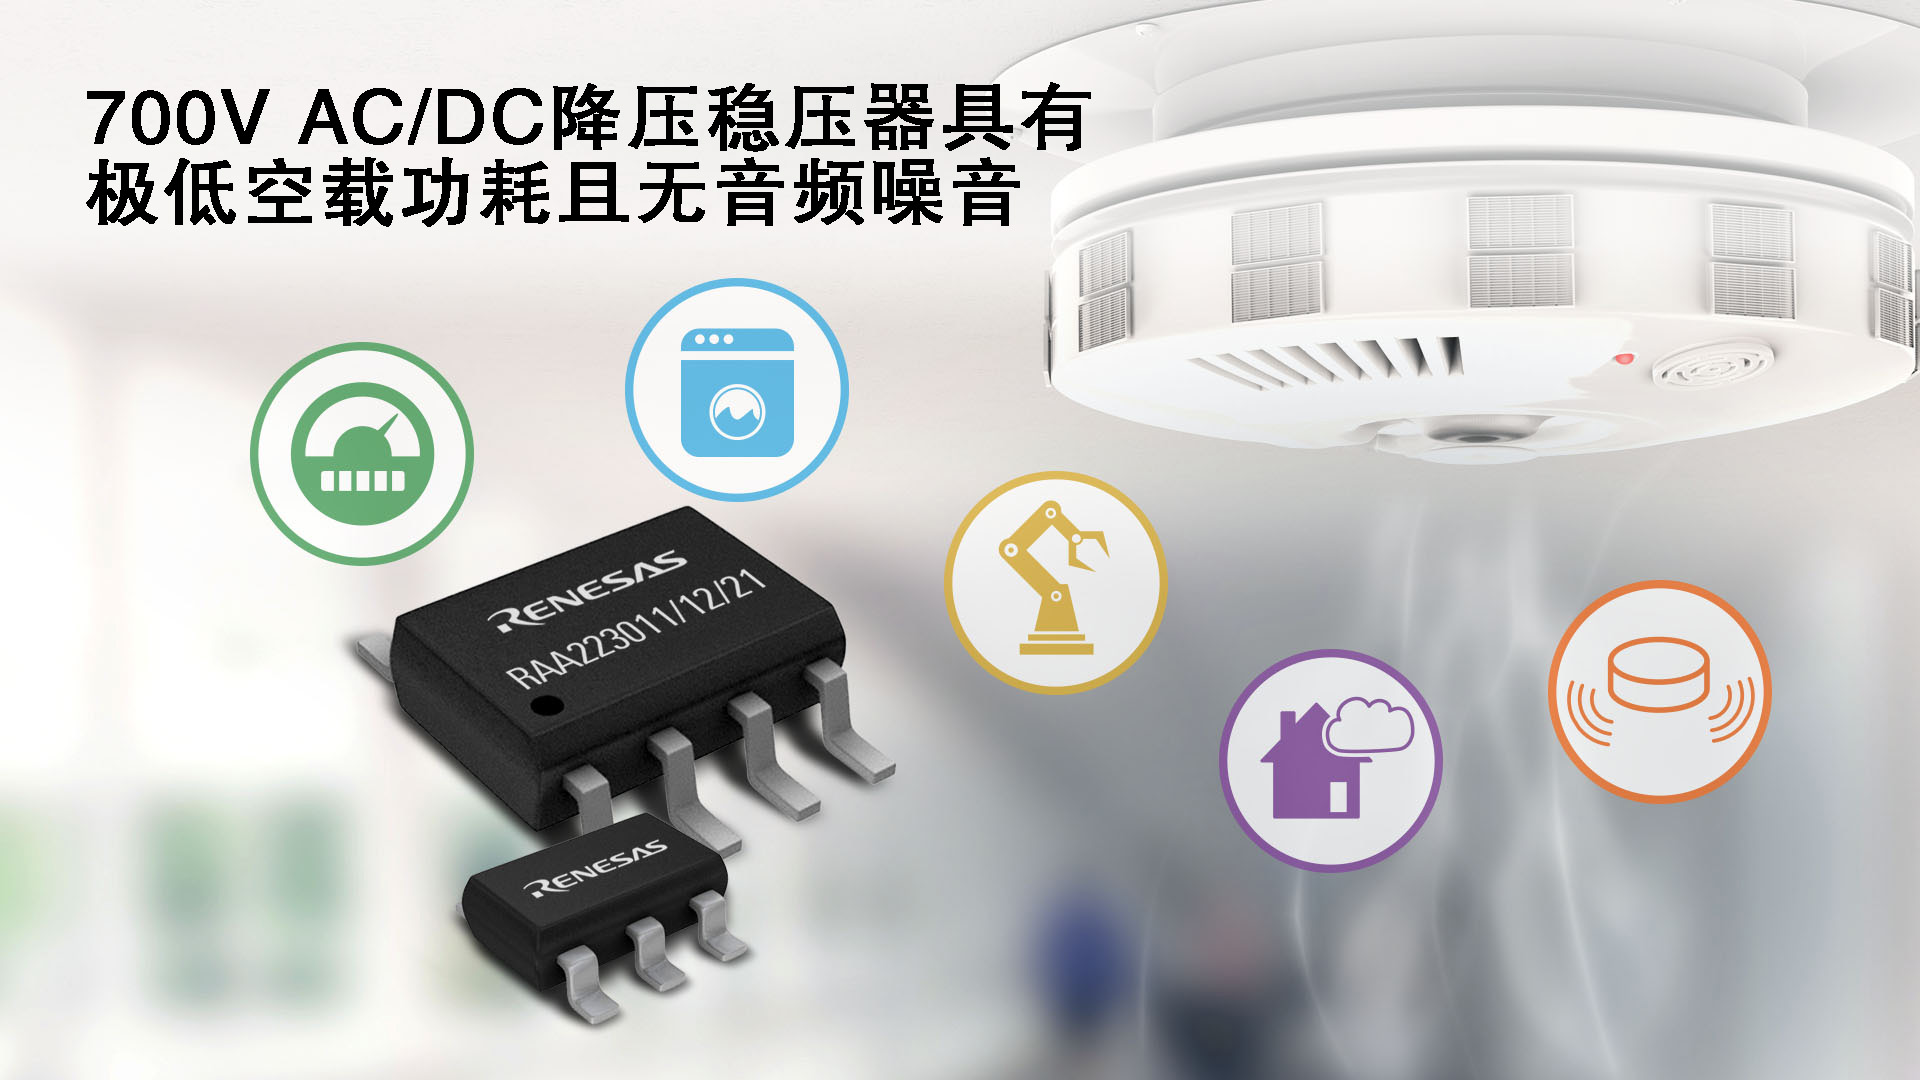 瑞萨电子推出全新700V降压稳压器产品家族适用于家电、智能家居、感测系统、电表和工业控制等应用